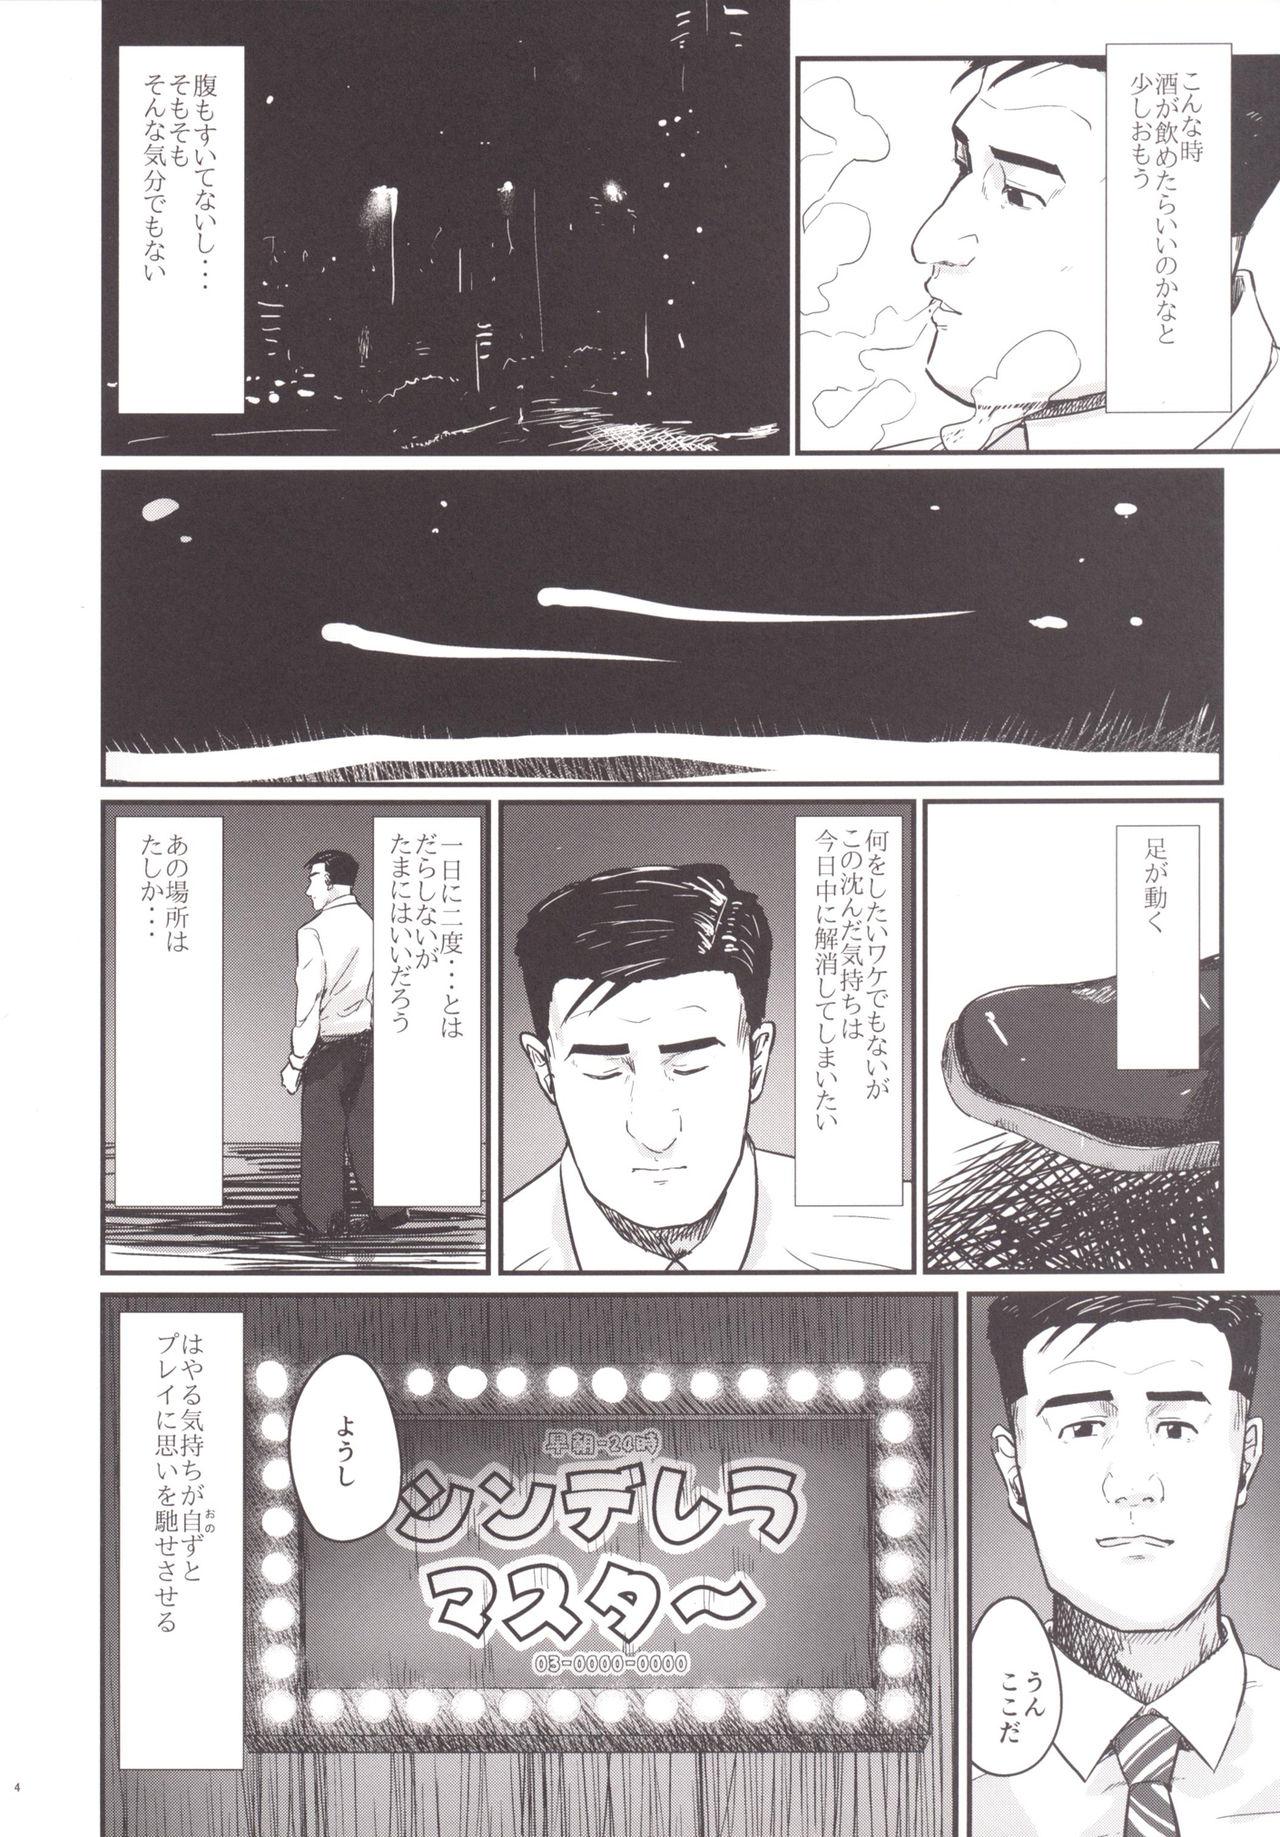 Chacal Kodoku no Fuuzoku 2 UzuRanRiKaede Hen - The idolmaster Kodoku no gourmet Classroom - Page 5